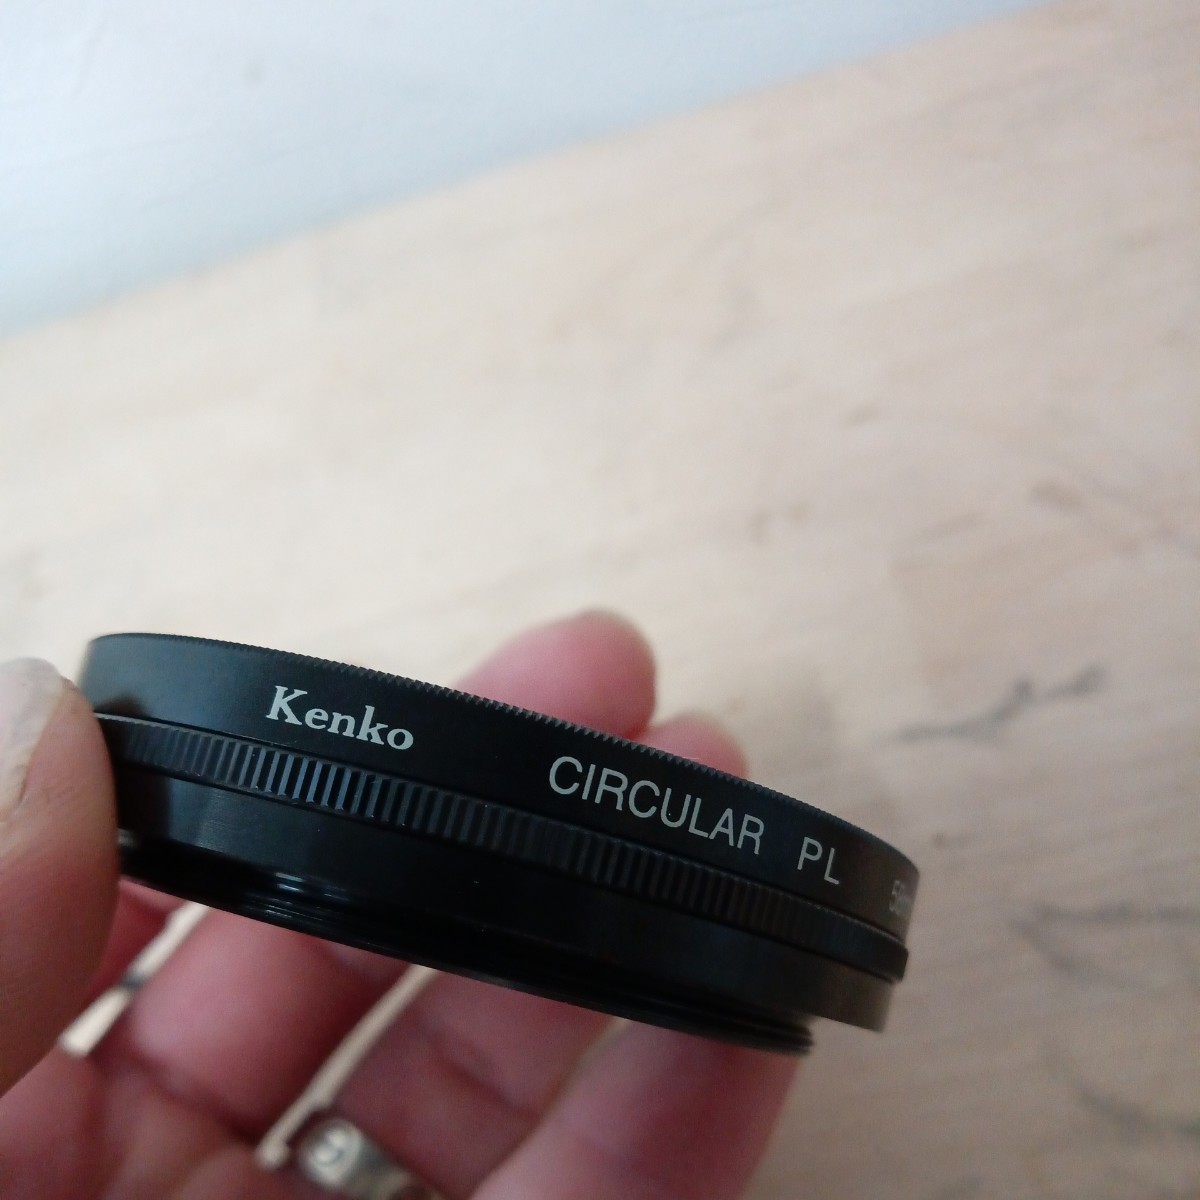 ケンコー Kenko CIRCULAR PL 58mm レンズフィルター カメラレンズアクセサリー クリックポスト mc pro softon 52_画像3